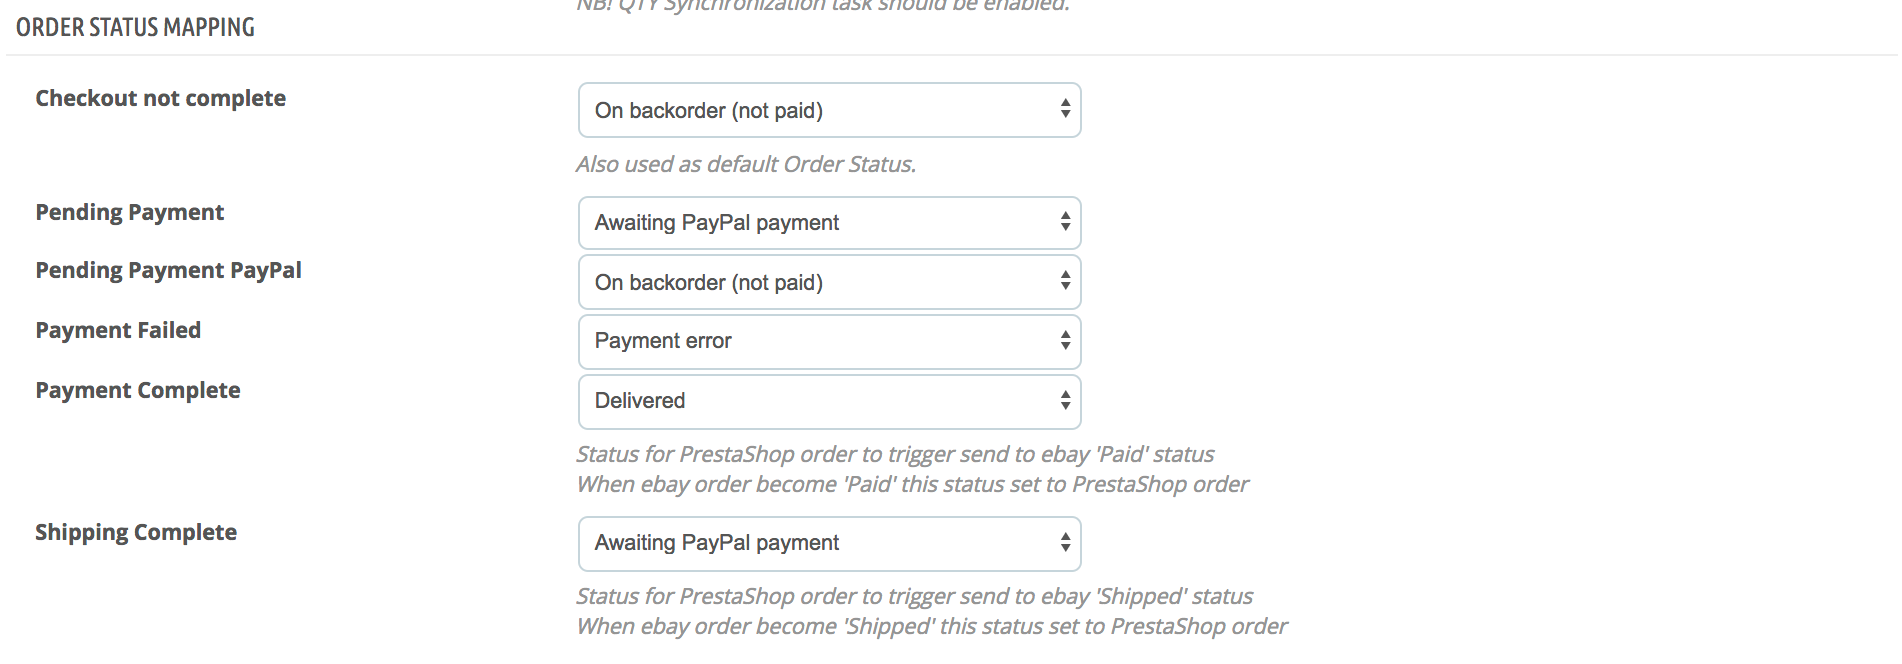 Modulo eBay PrestaShop — Opzioni di sincronizzazione degli ordini